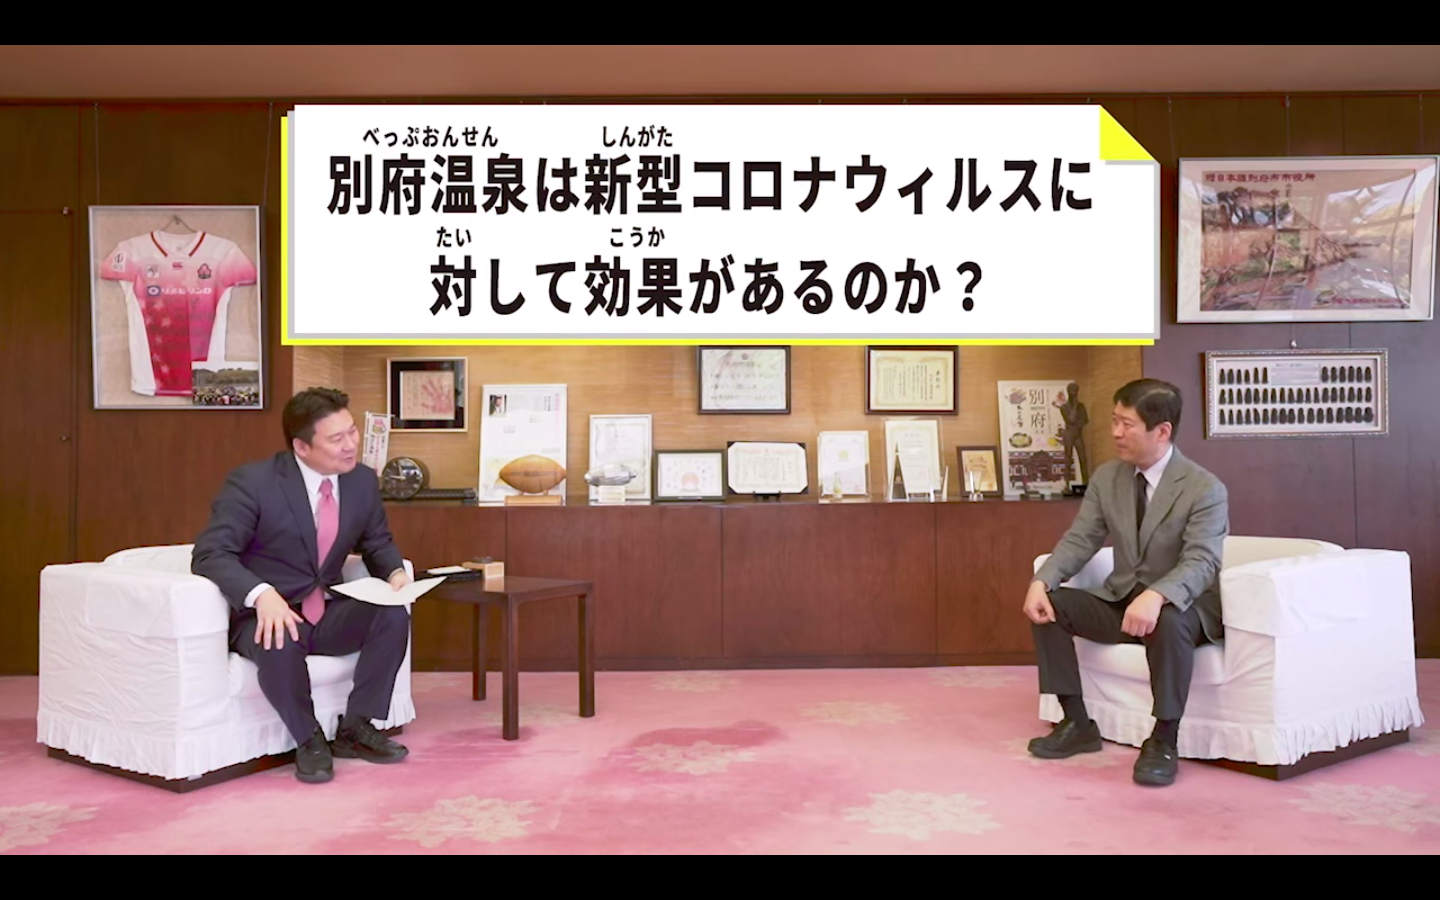 Beppu Mayor Yasuhiro Nagano and Professor Toyoki Maeda discuss coronavirus and onsen